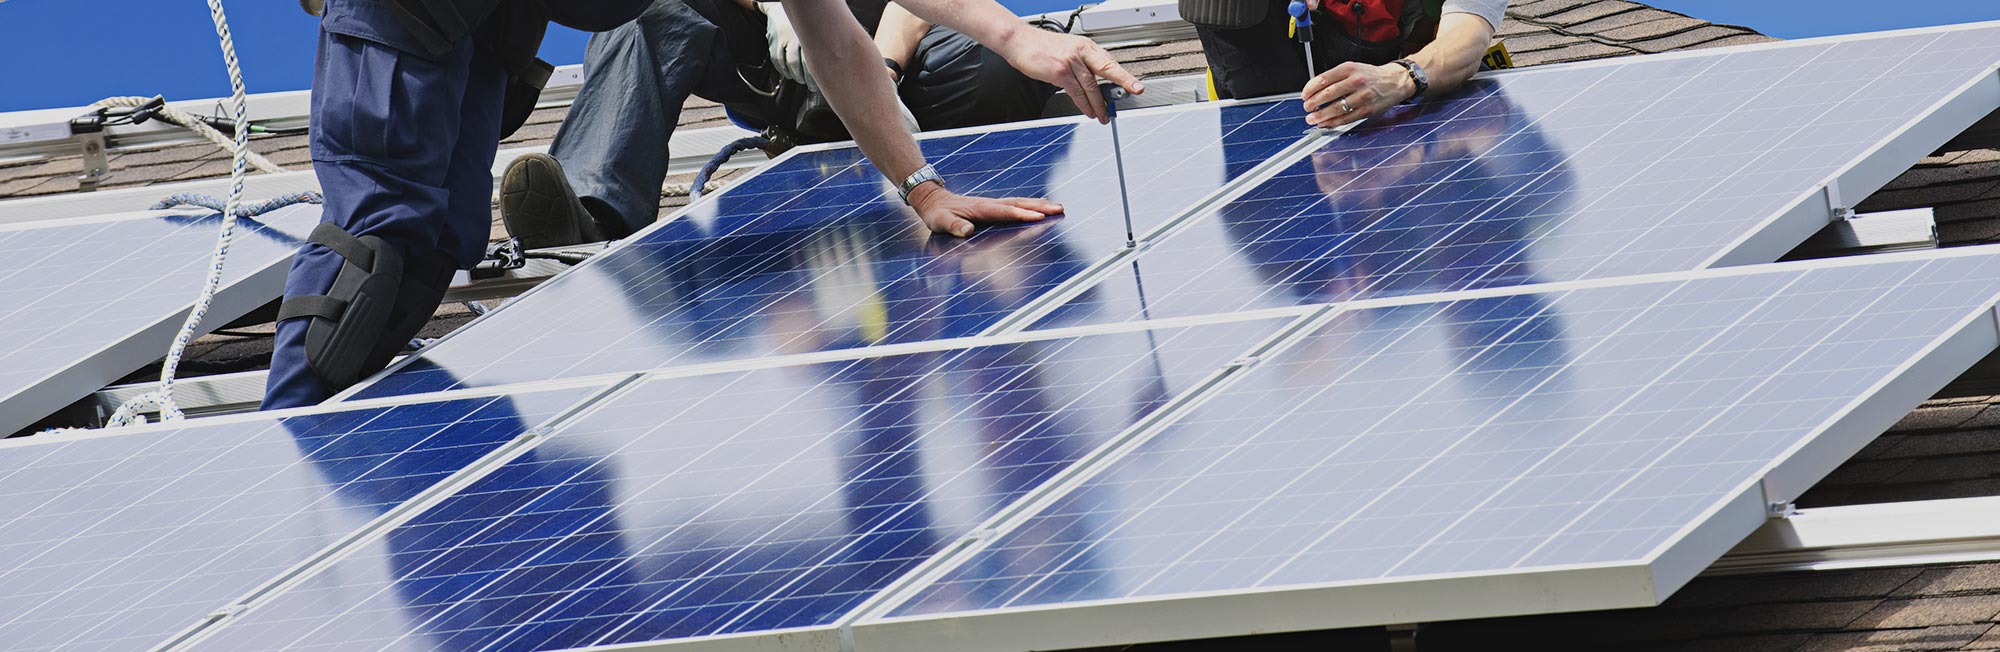 Fotovoltaický rozbočovač Sunpulse SMC4-3Y je určený pro solární aplikace ve venkovním prostředí.